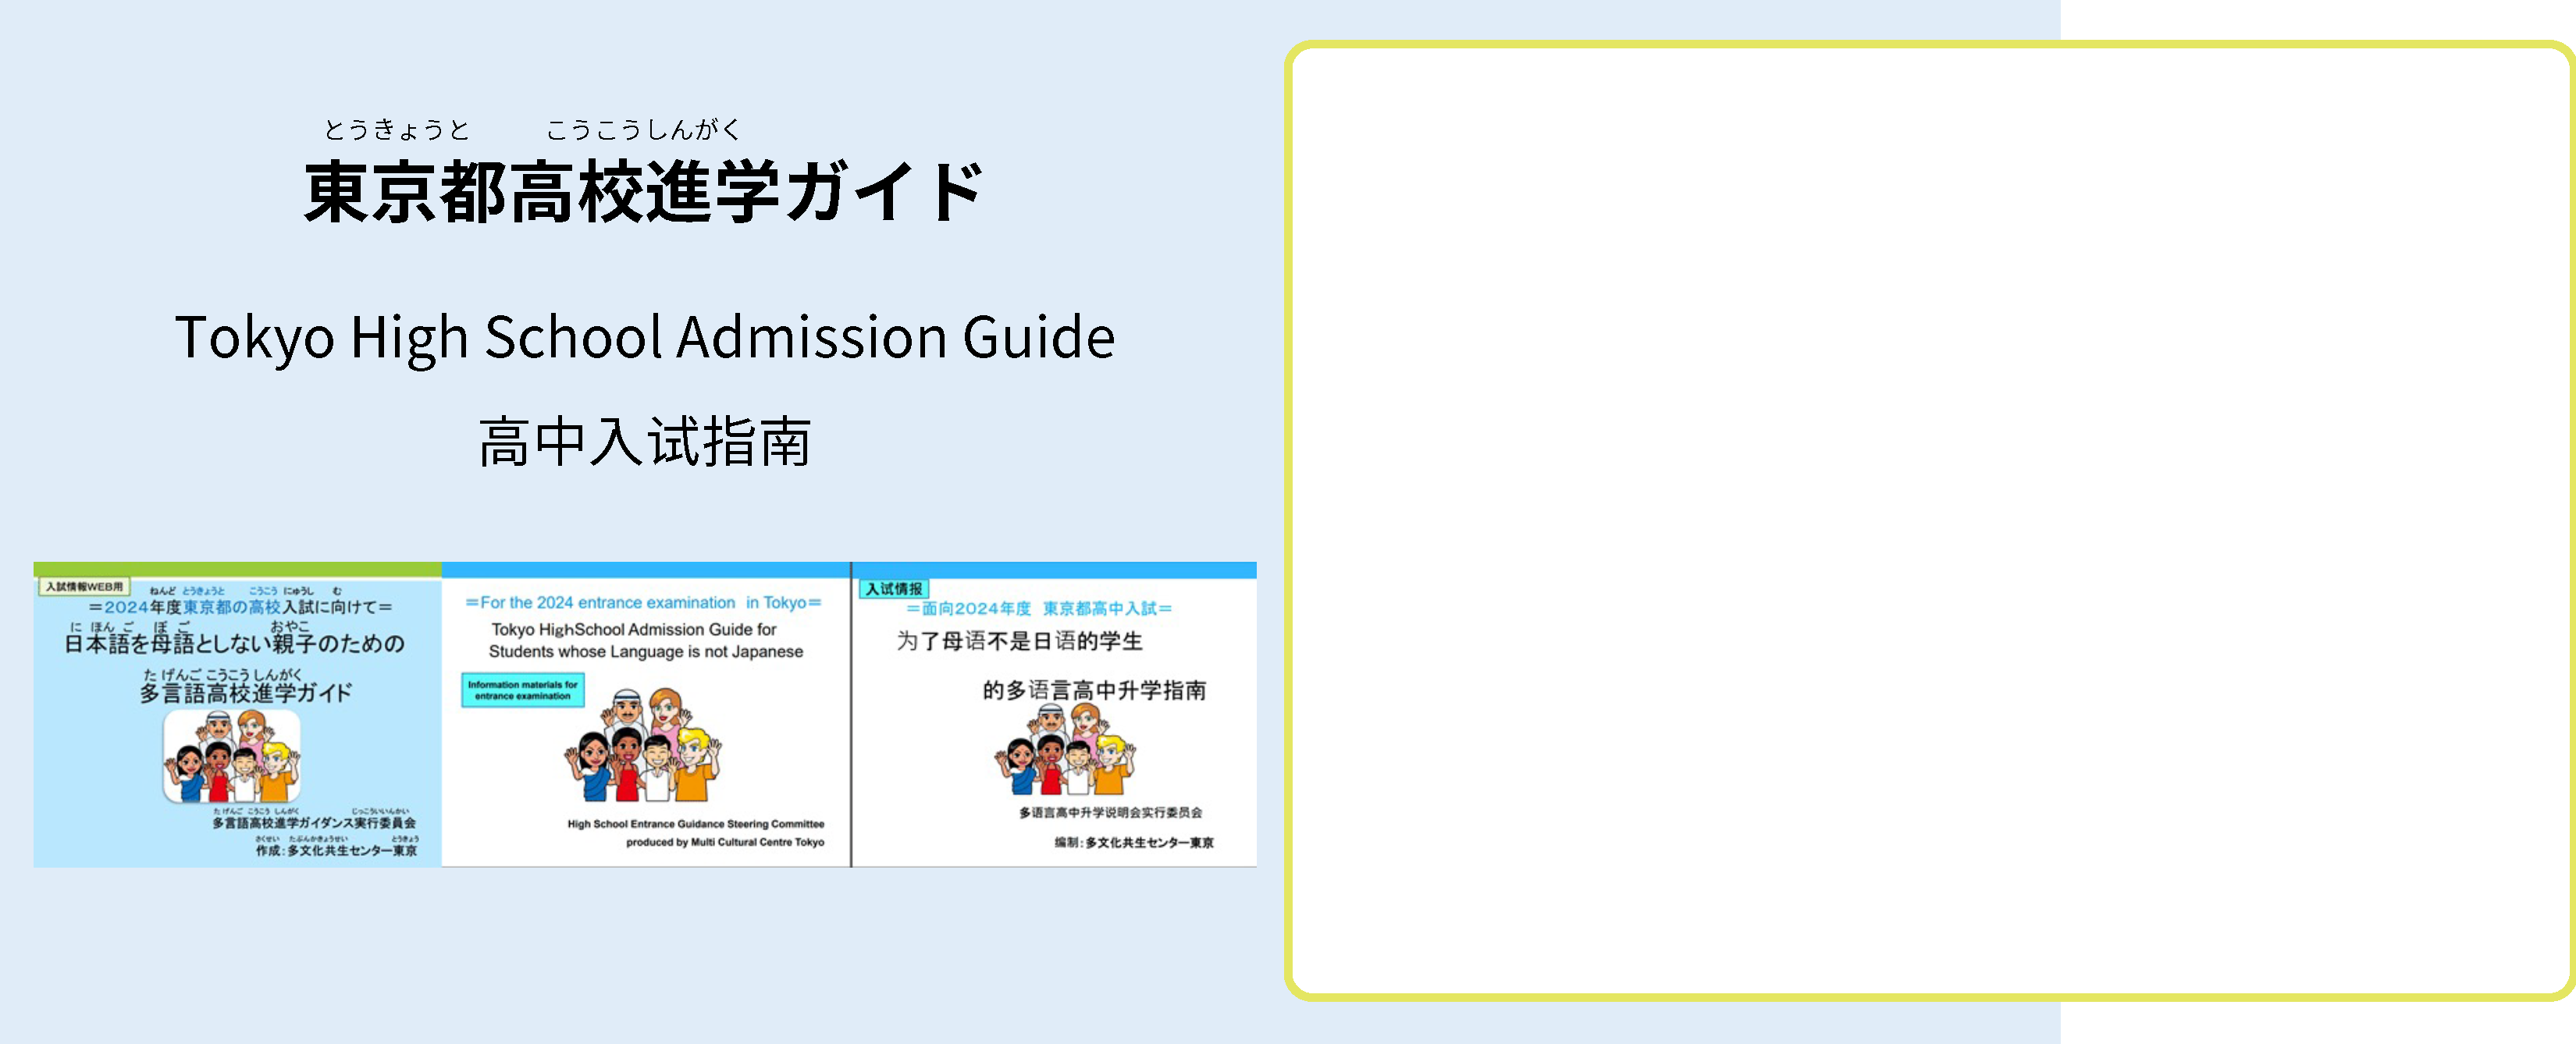 東京都高校進学ガイド　Tokyo High School Admission Guide  高中入试指南　表紙の画像